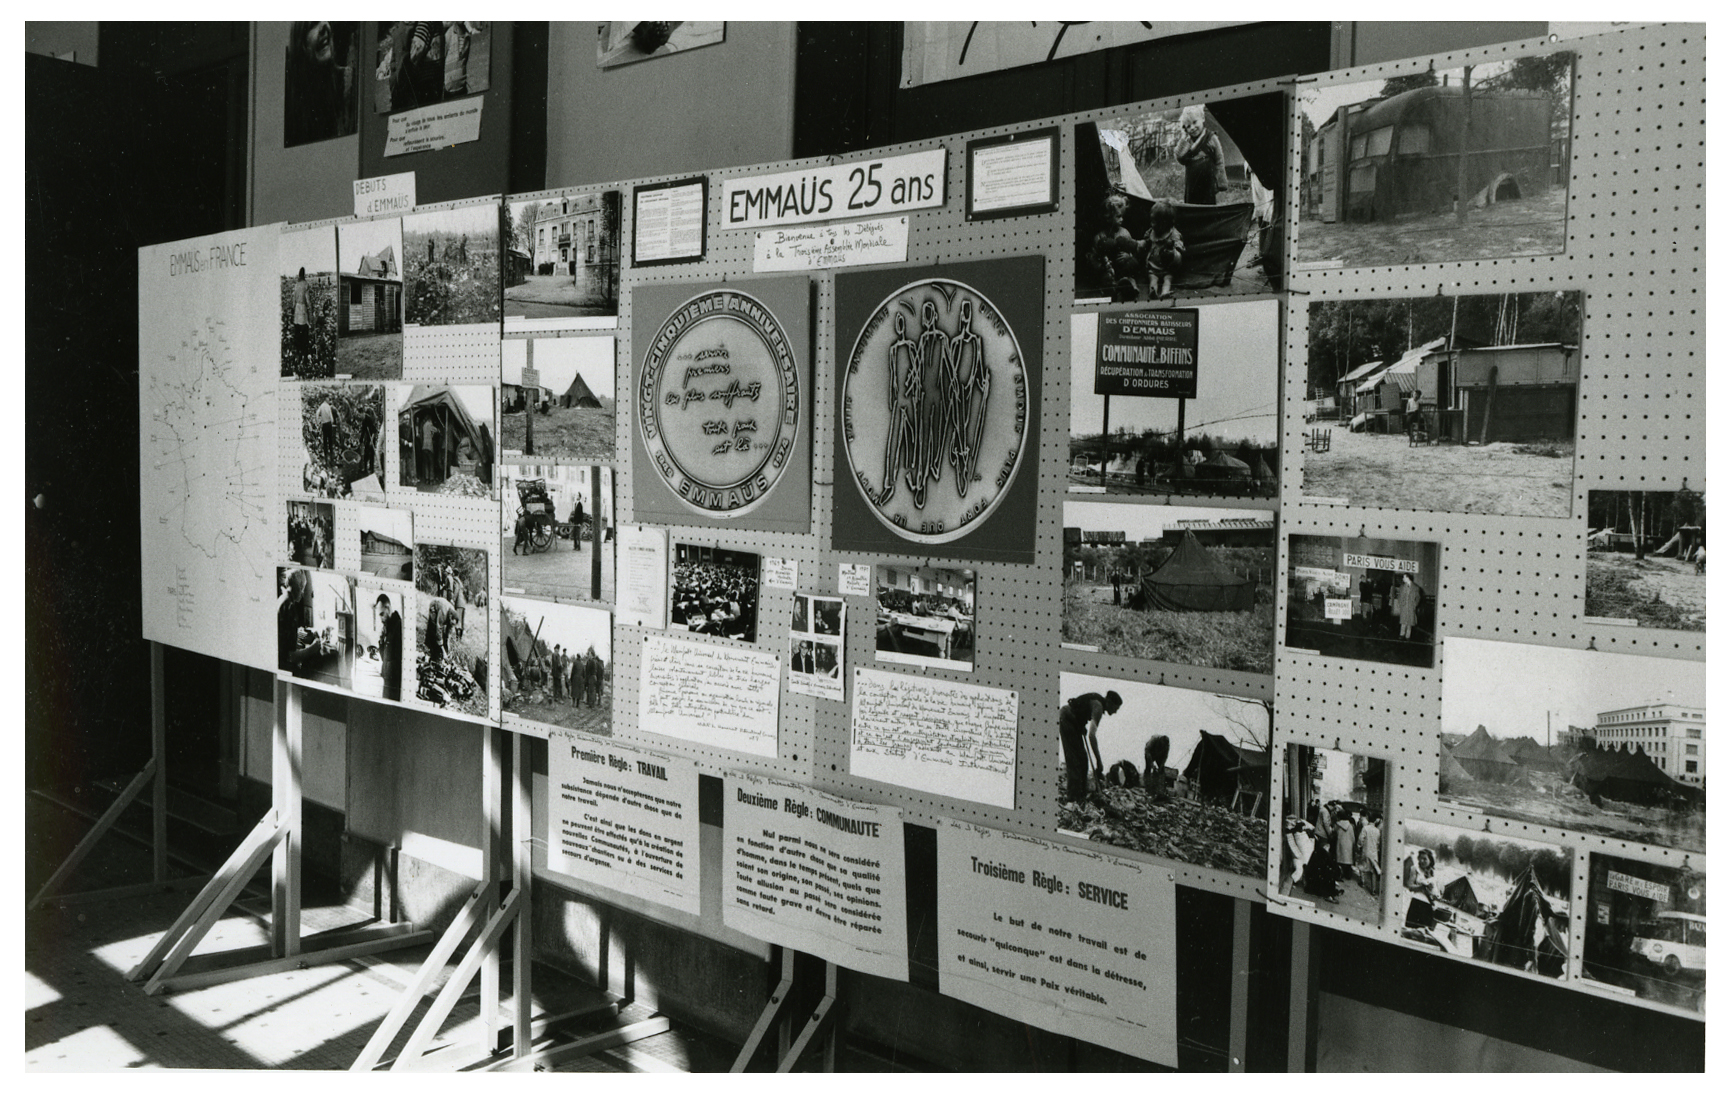 Photographie des panneaux d'expositions présentés lors de l'assemblée, retraçant les 25 ans de l'histoire du "Mouvement", 1974.